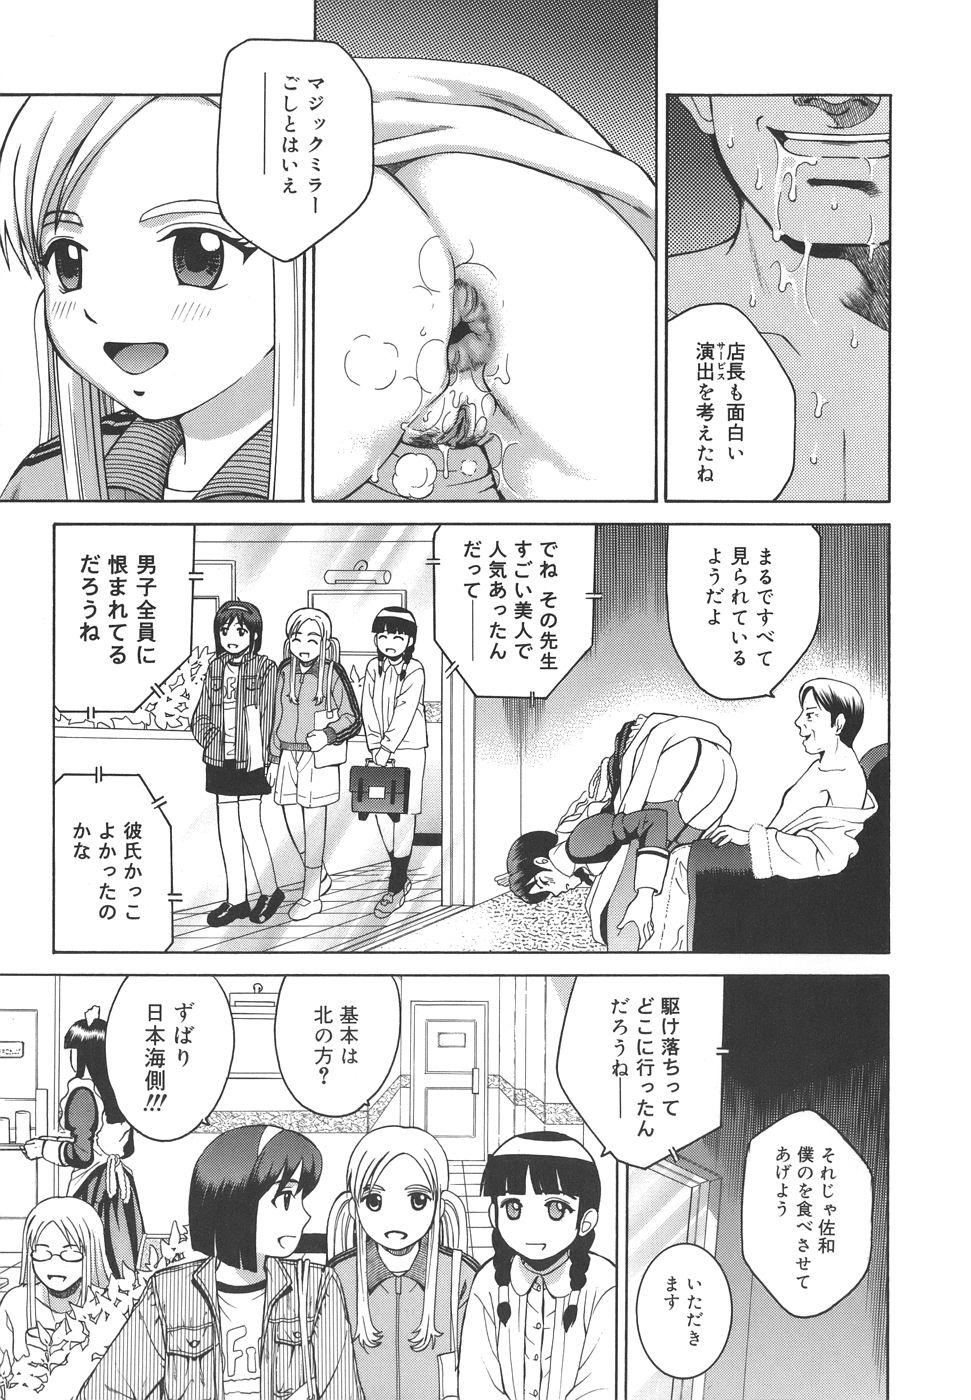 Sis Himitsu Jugyou Pure 18 - Page 233